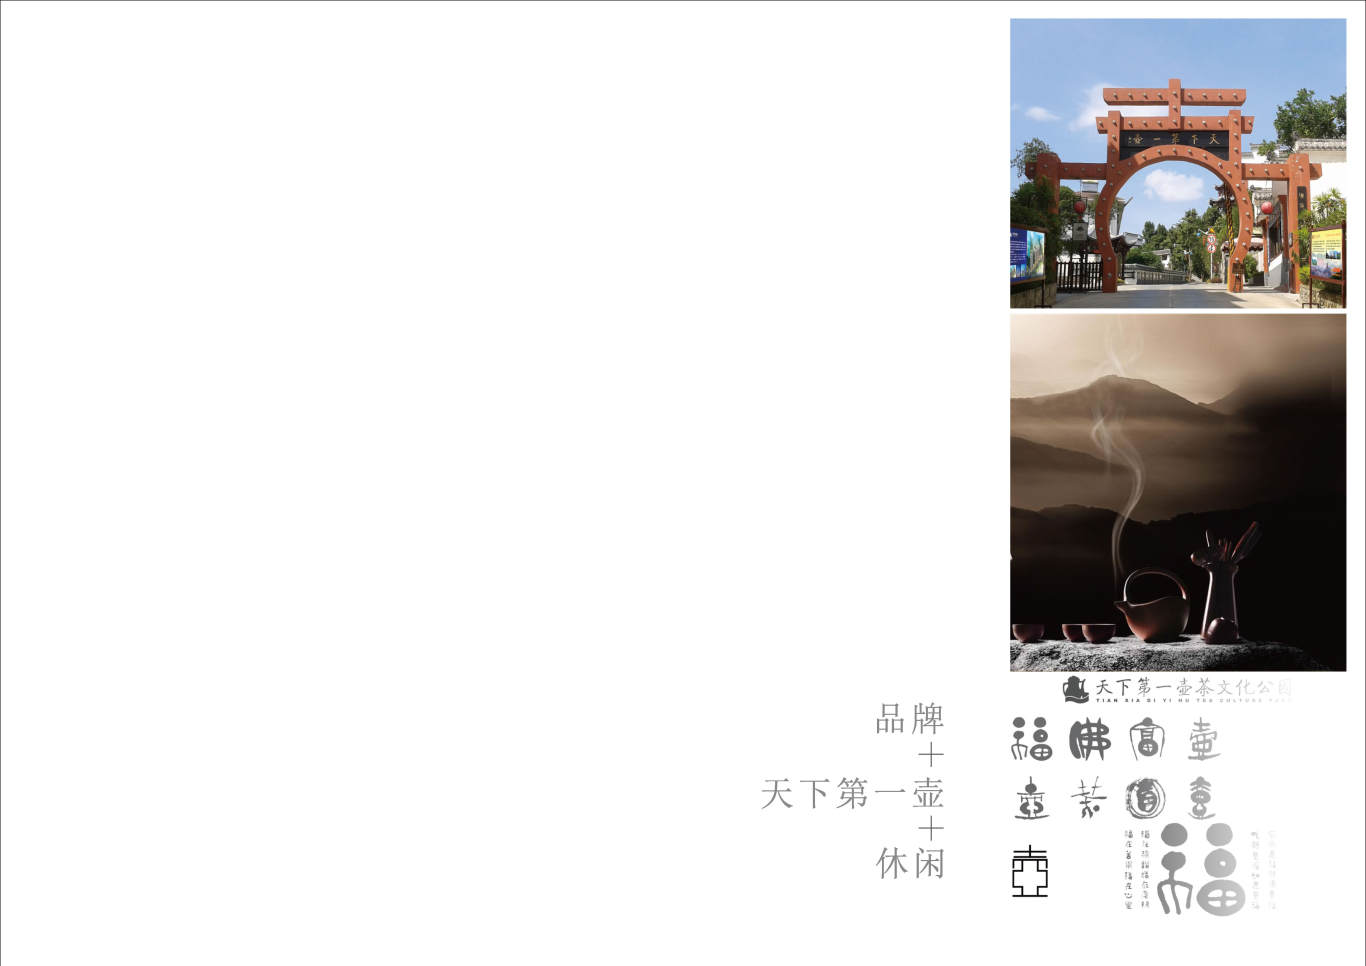 贵州湄潭天下第一壶中华茶文化博览园户外标识牌方案图1